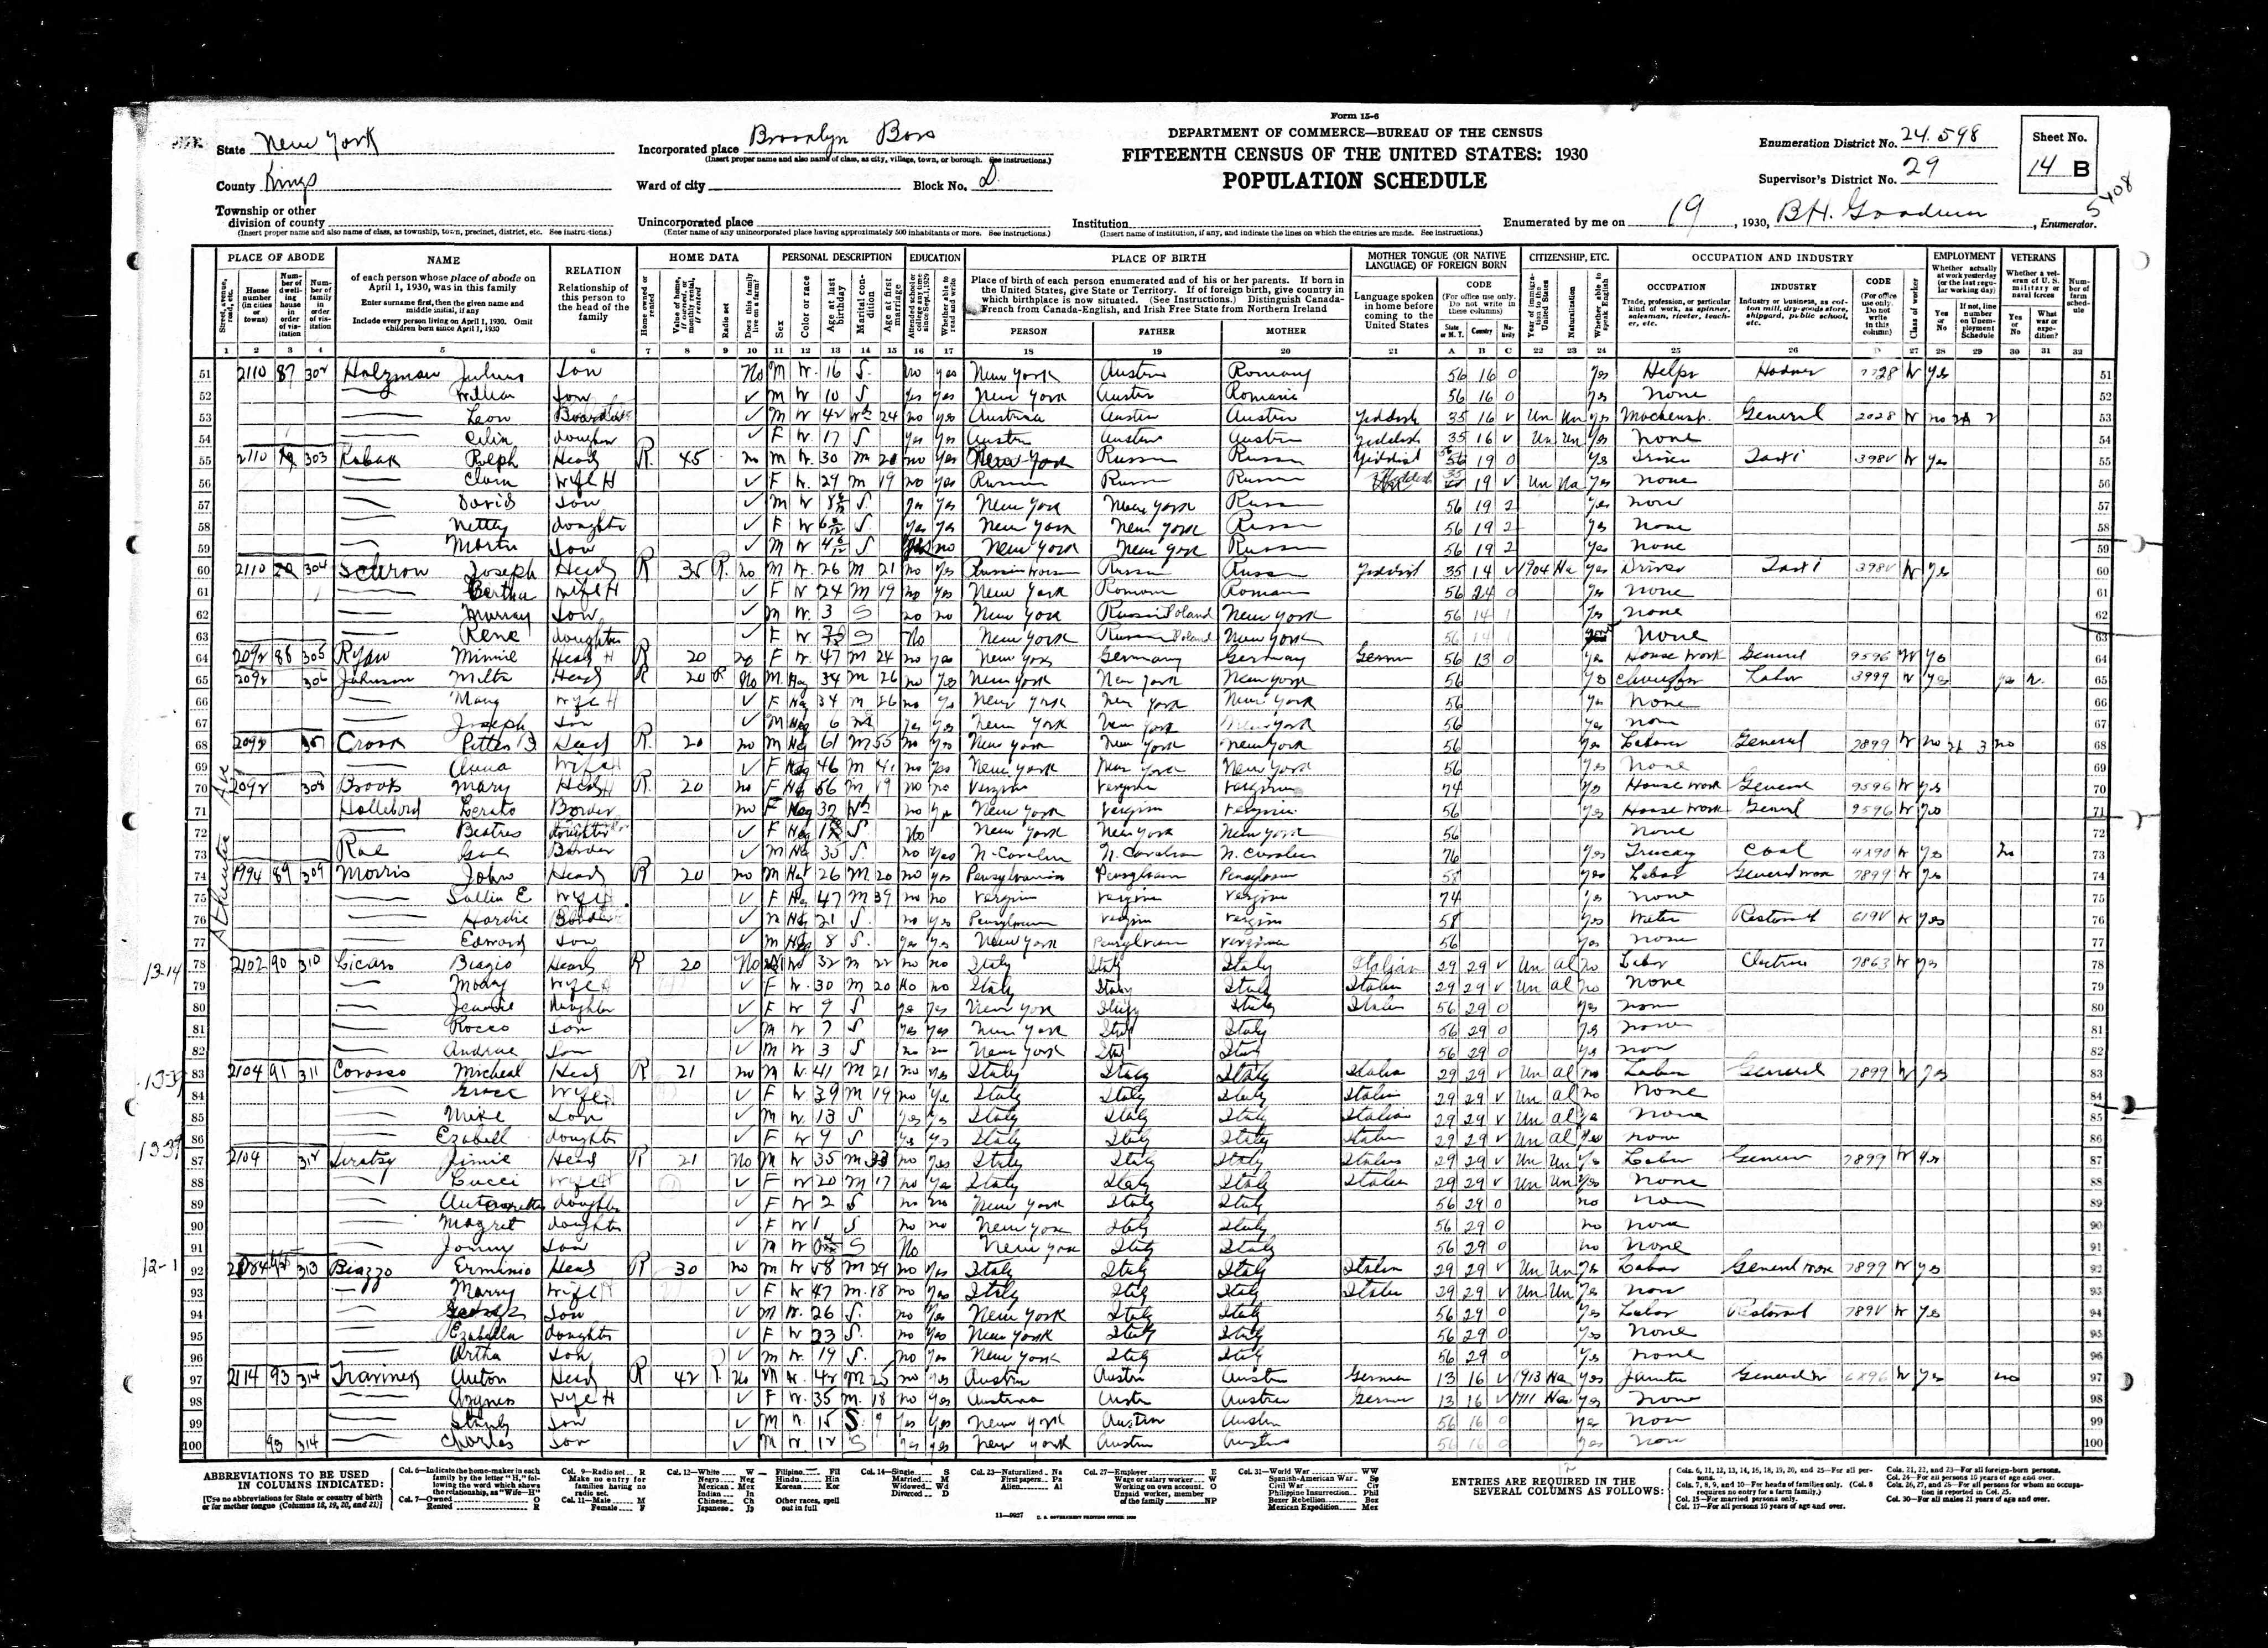 Leon Julius and William Holzman 1930 Census